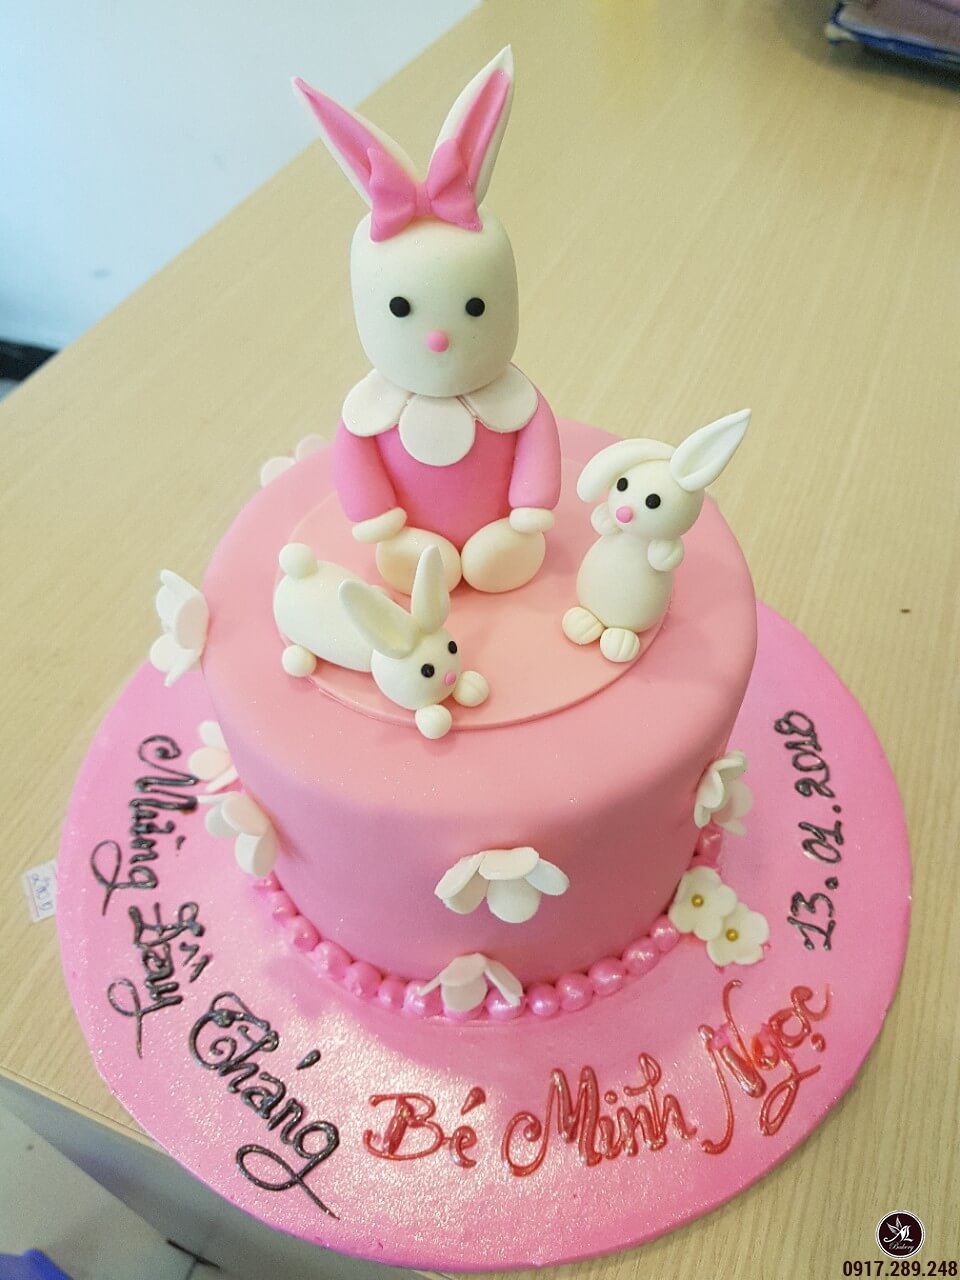 Bánh sinh nhật Fondant tạo hình thỏ con dễ thương màu hồng | Bánh ...